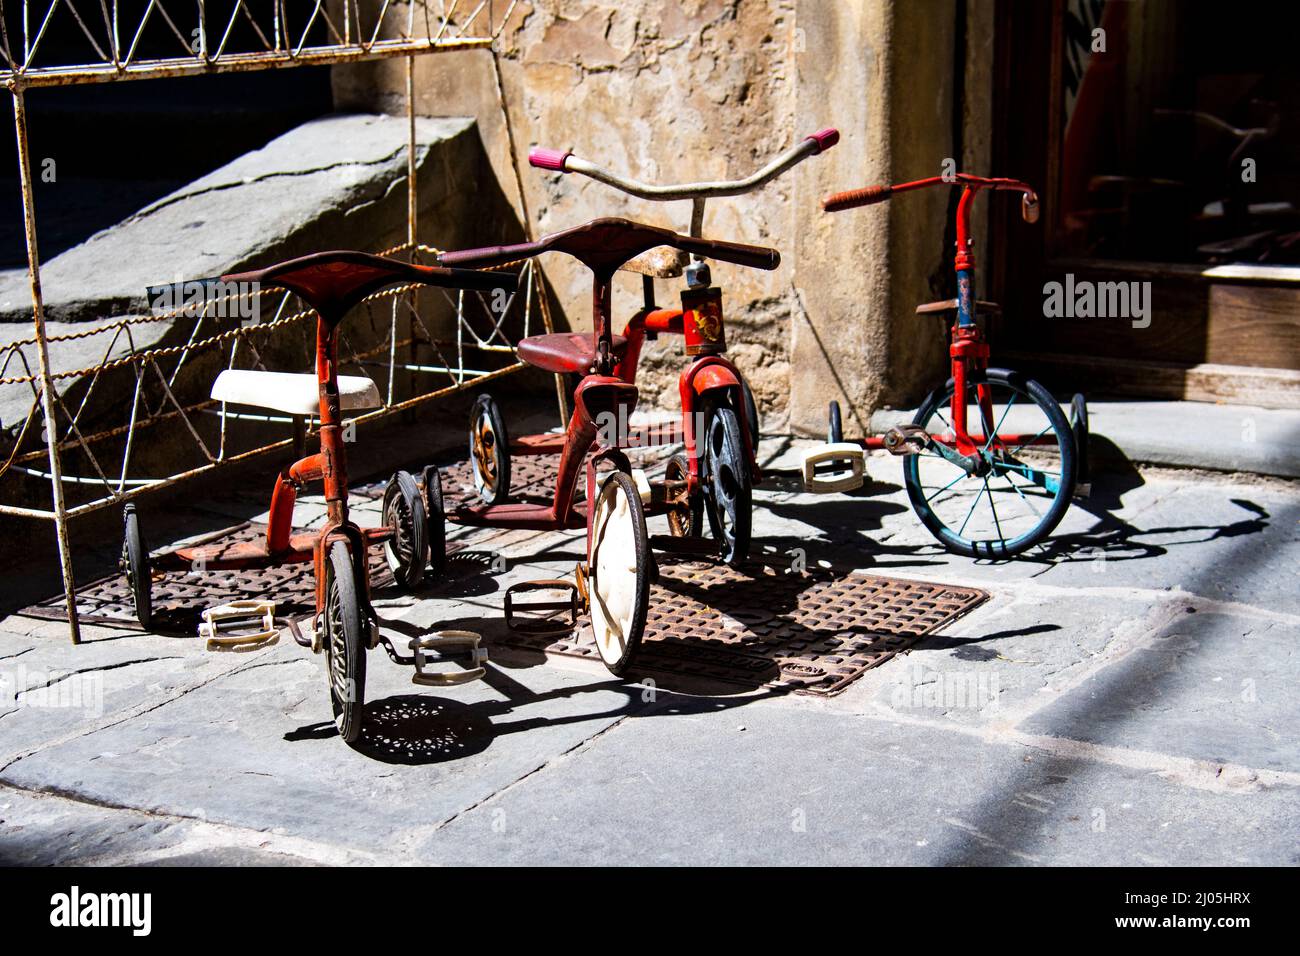 Vélo pour enfants à 3 roues, vélo à trois roues dans une boutique de Rome, Italie. Banque D'Images